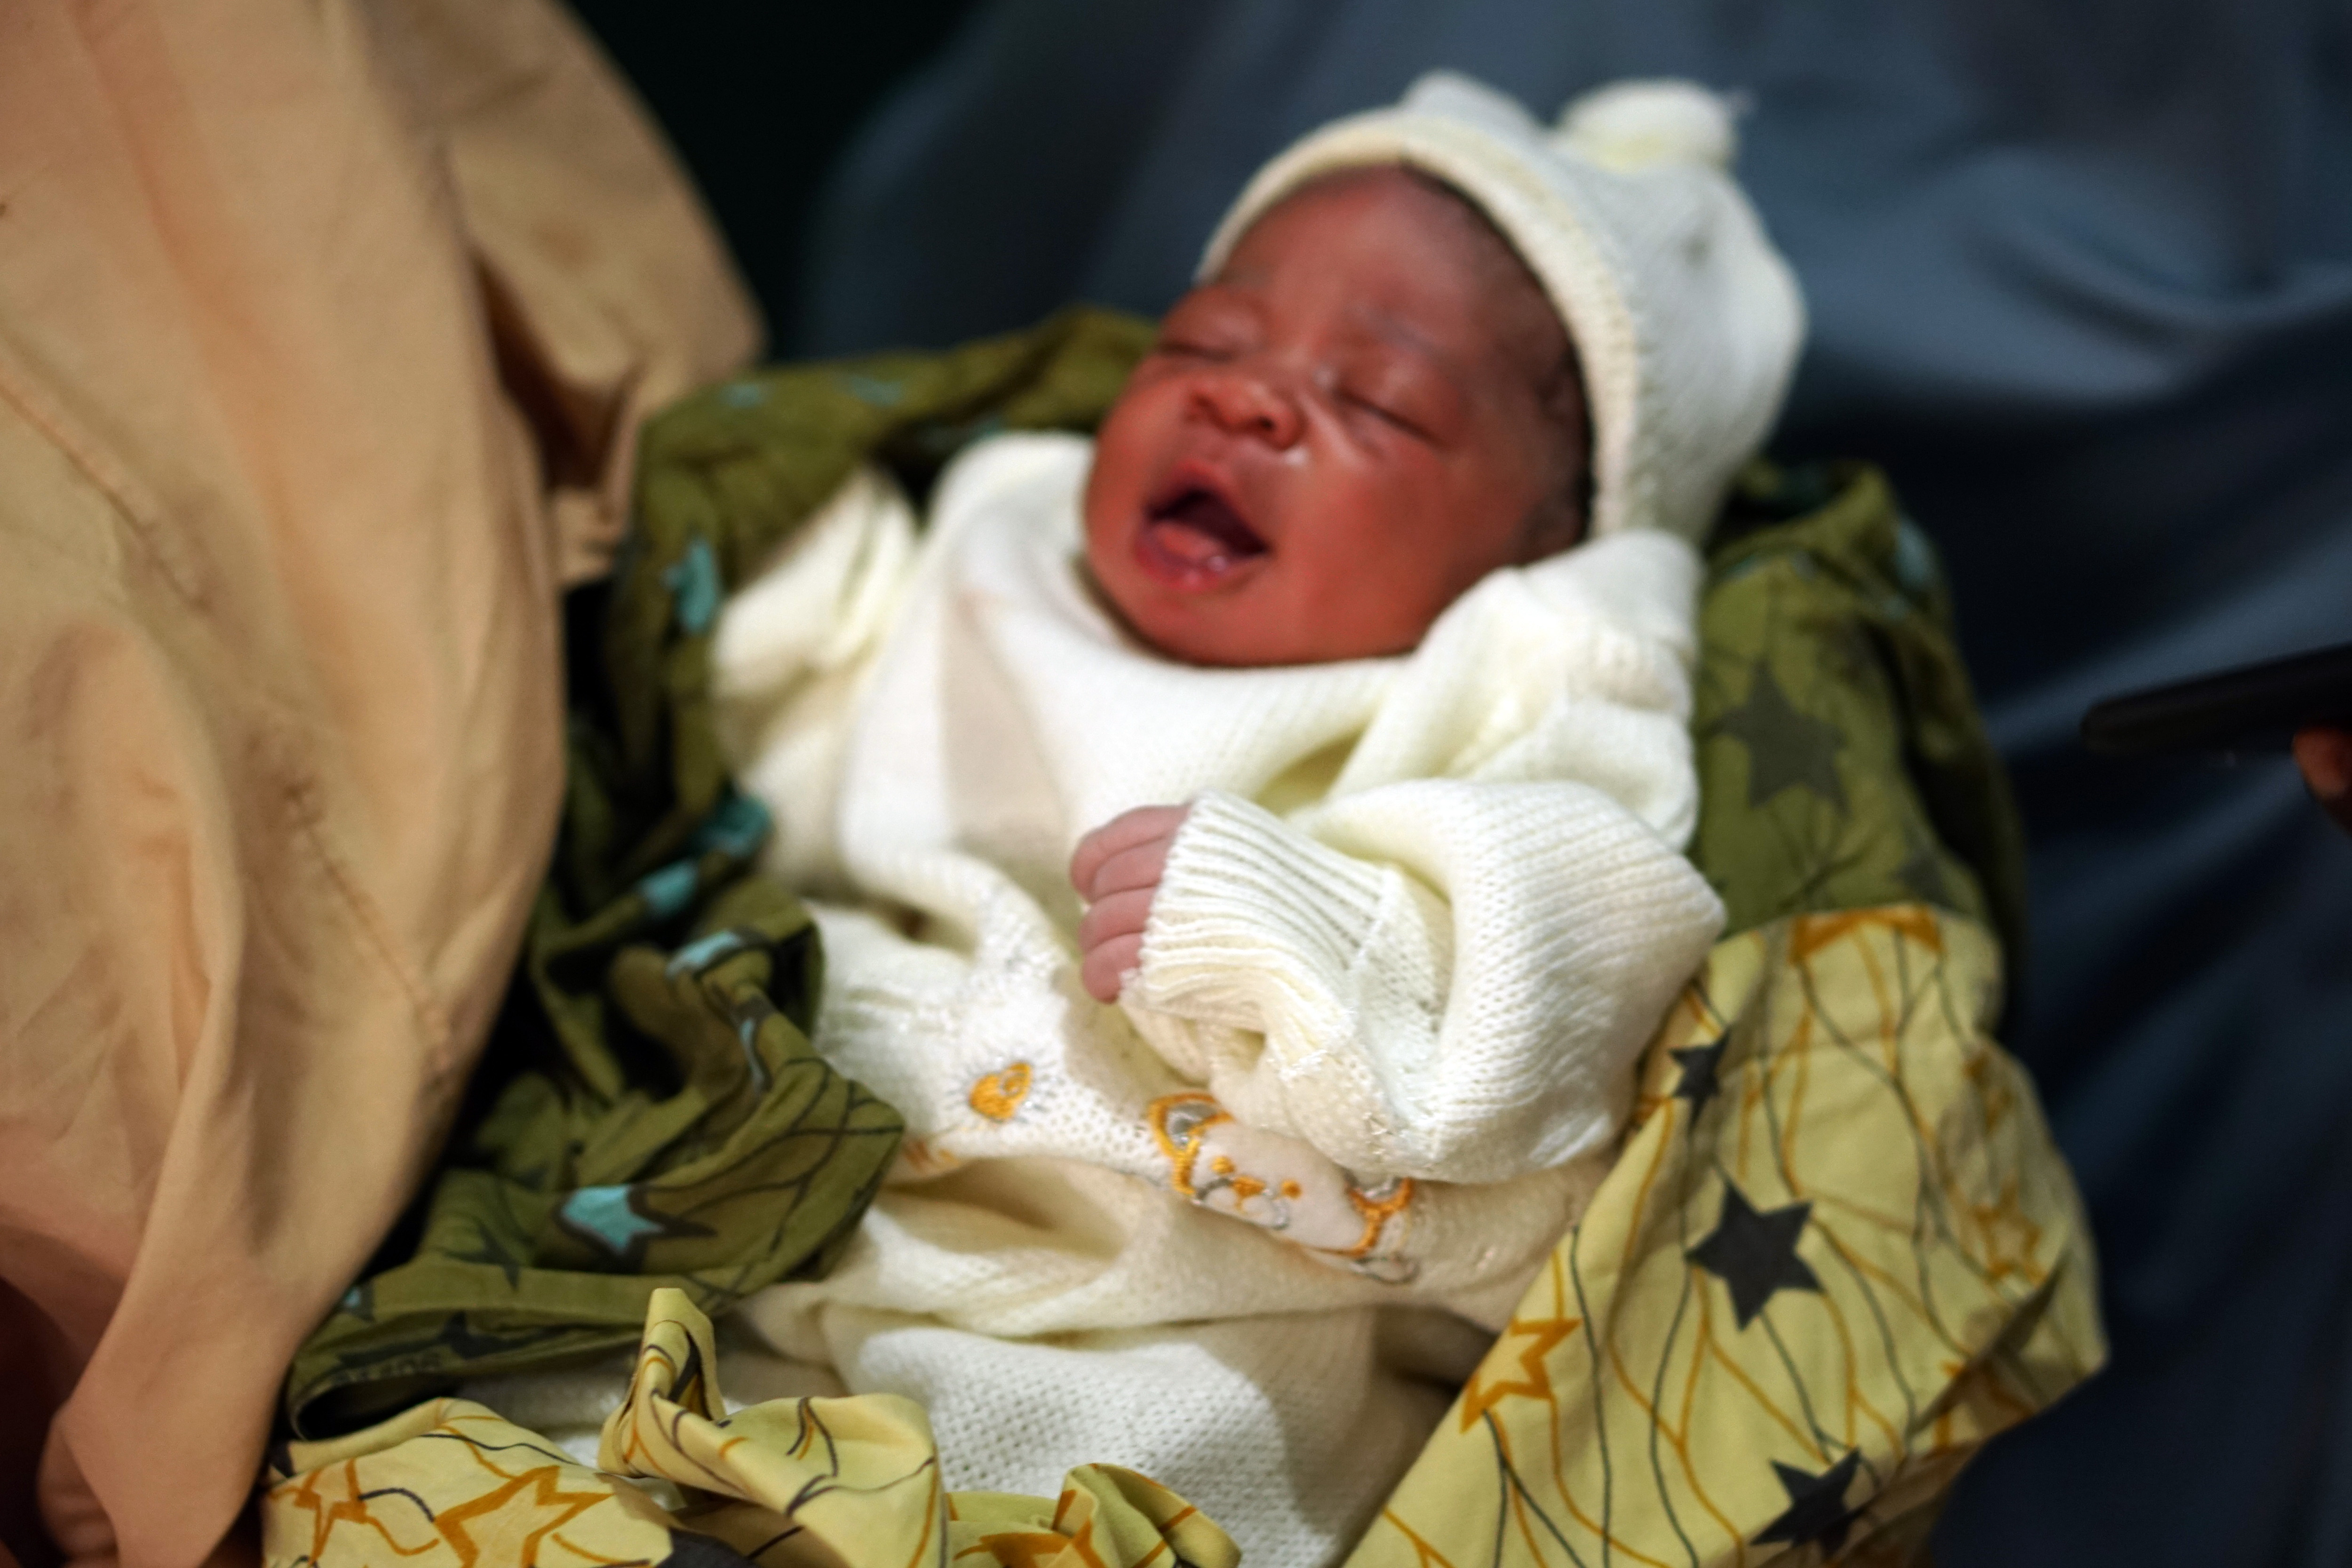 A newborn baby in Nigeria